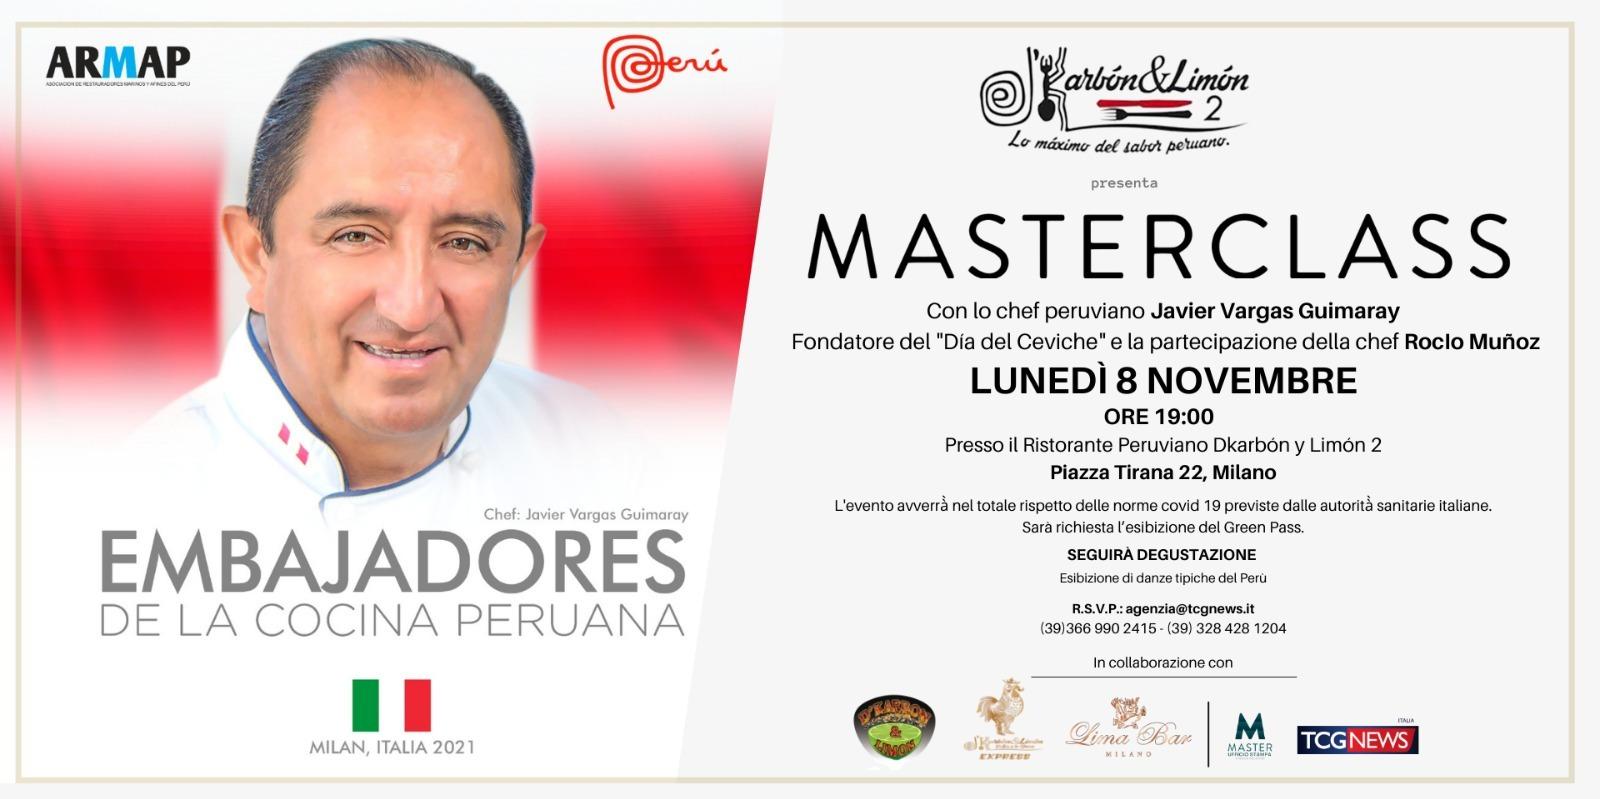 Masterclass Con lo chef peruviano Javier Vargas Guimaray